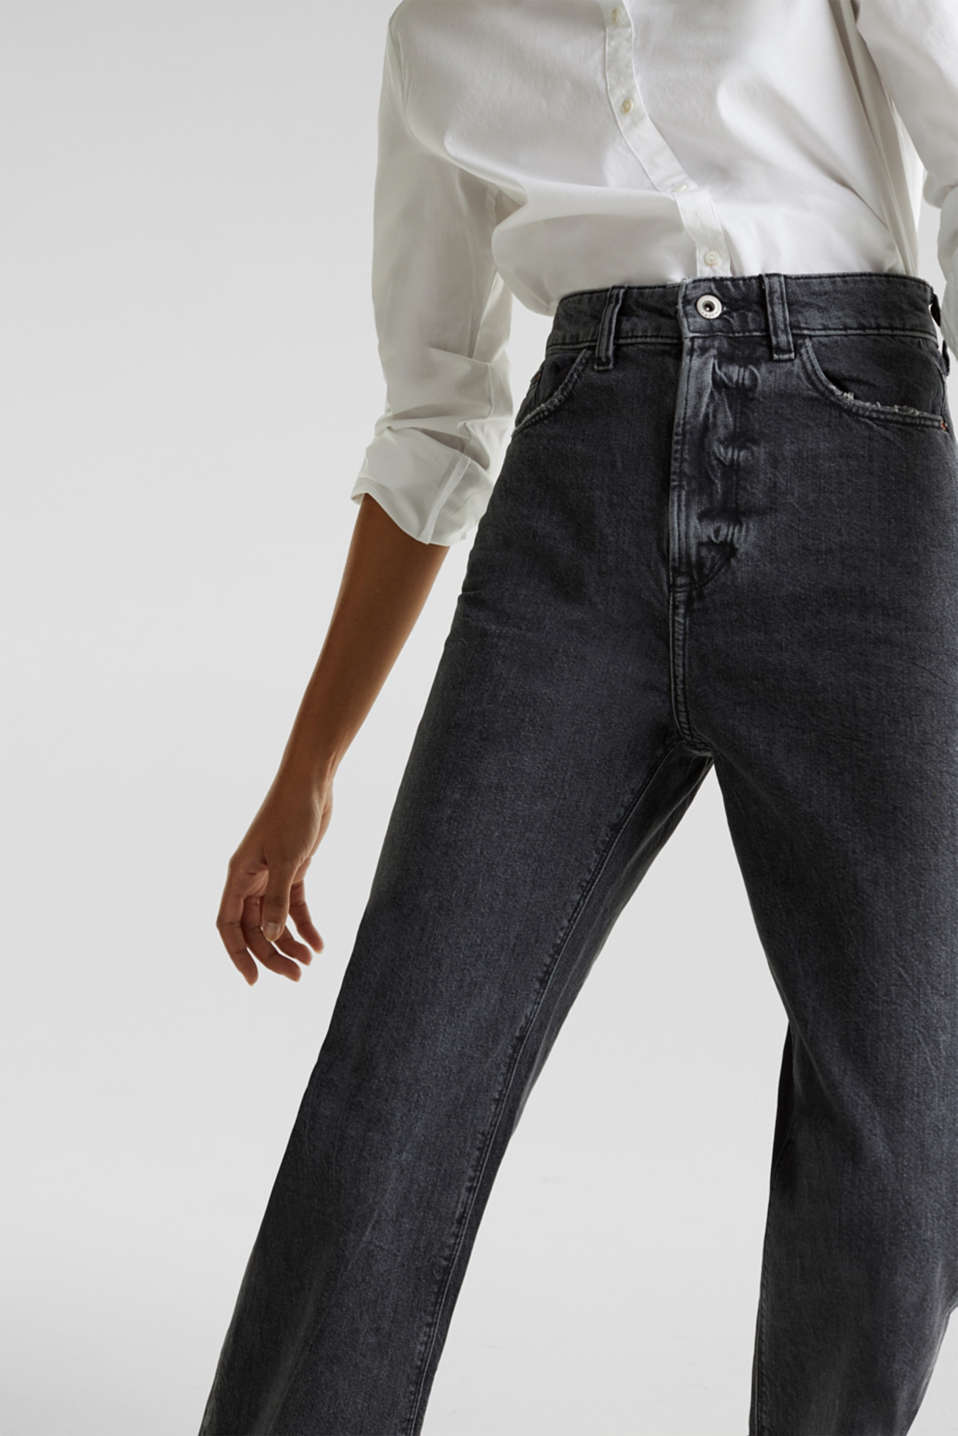 Onwijs edc - Enkellange jeans met wijde pijpen kopen in de online shop SP-28